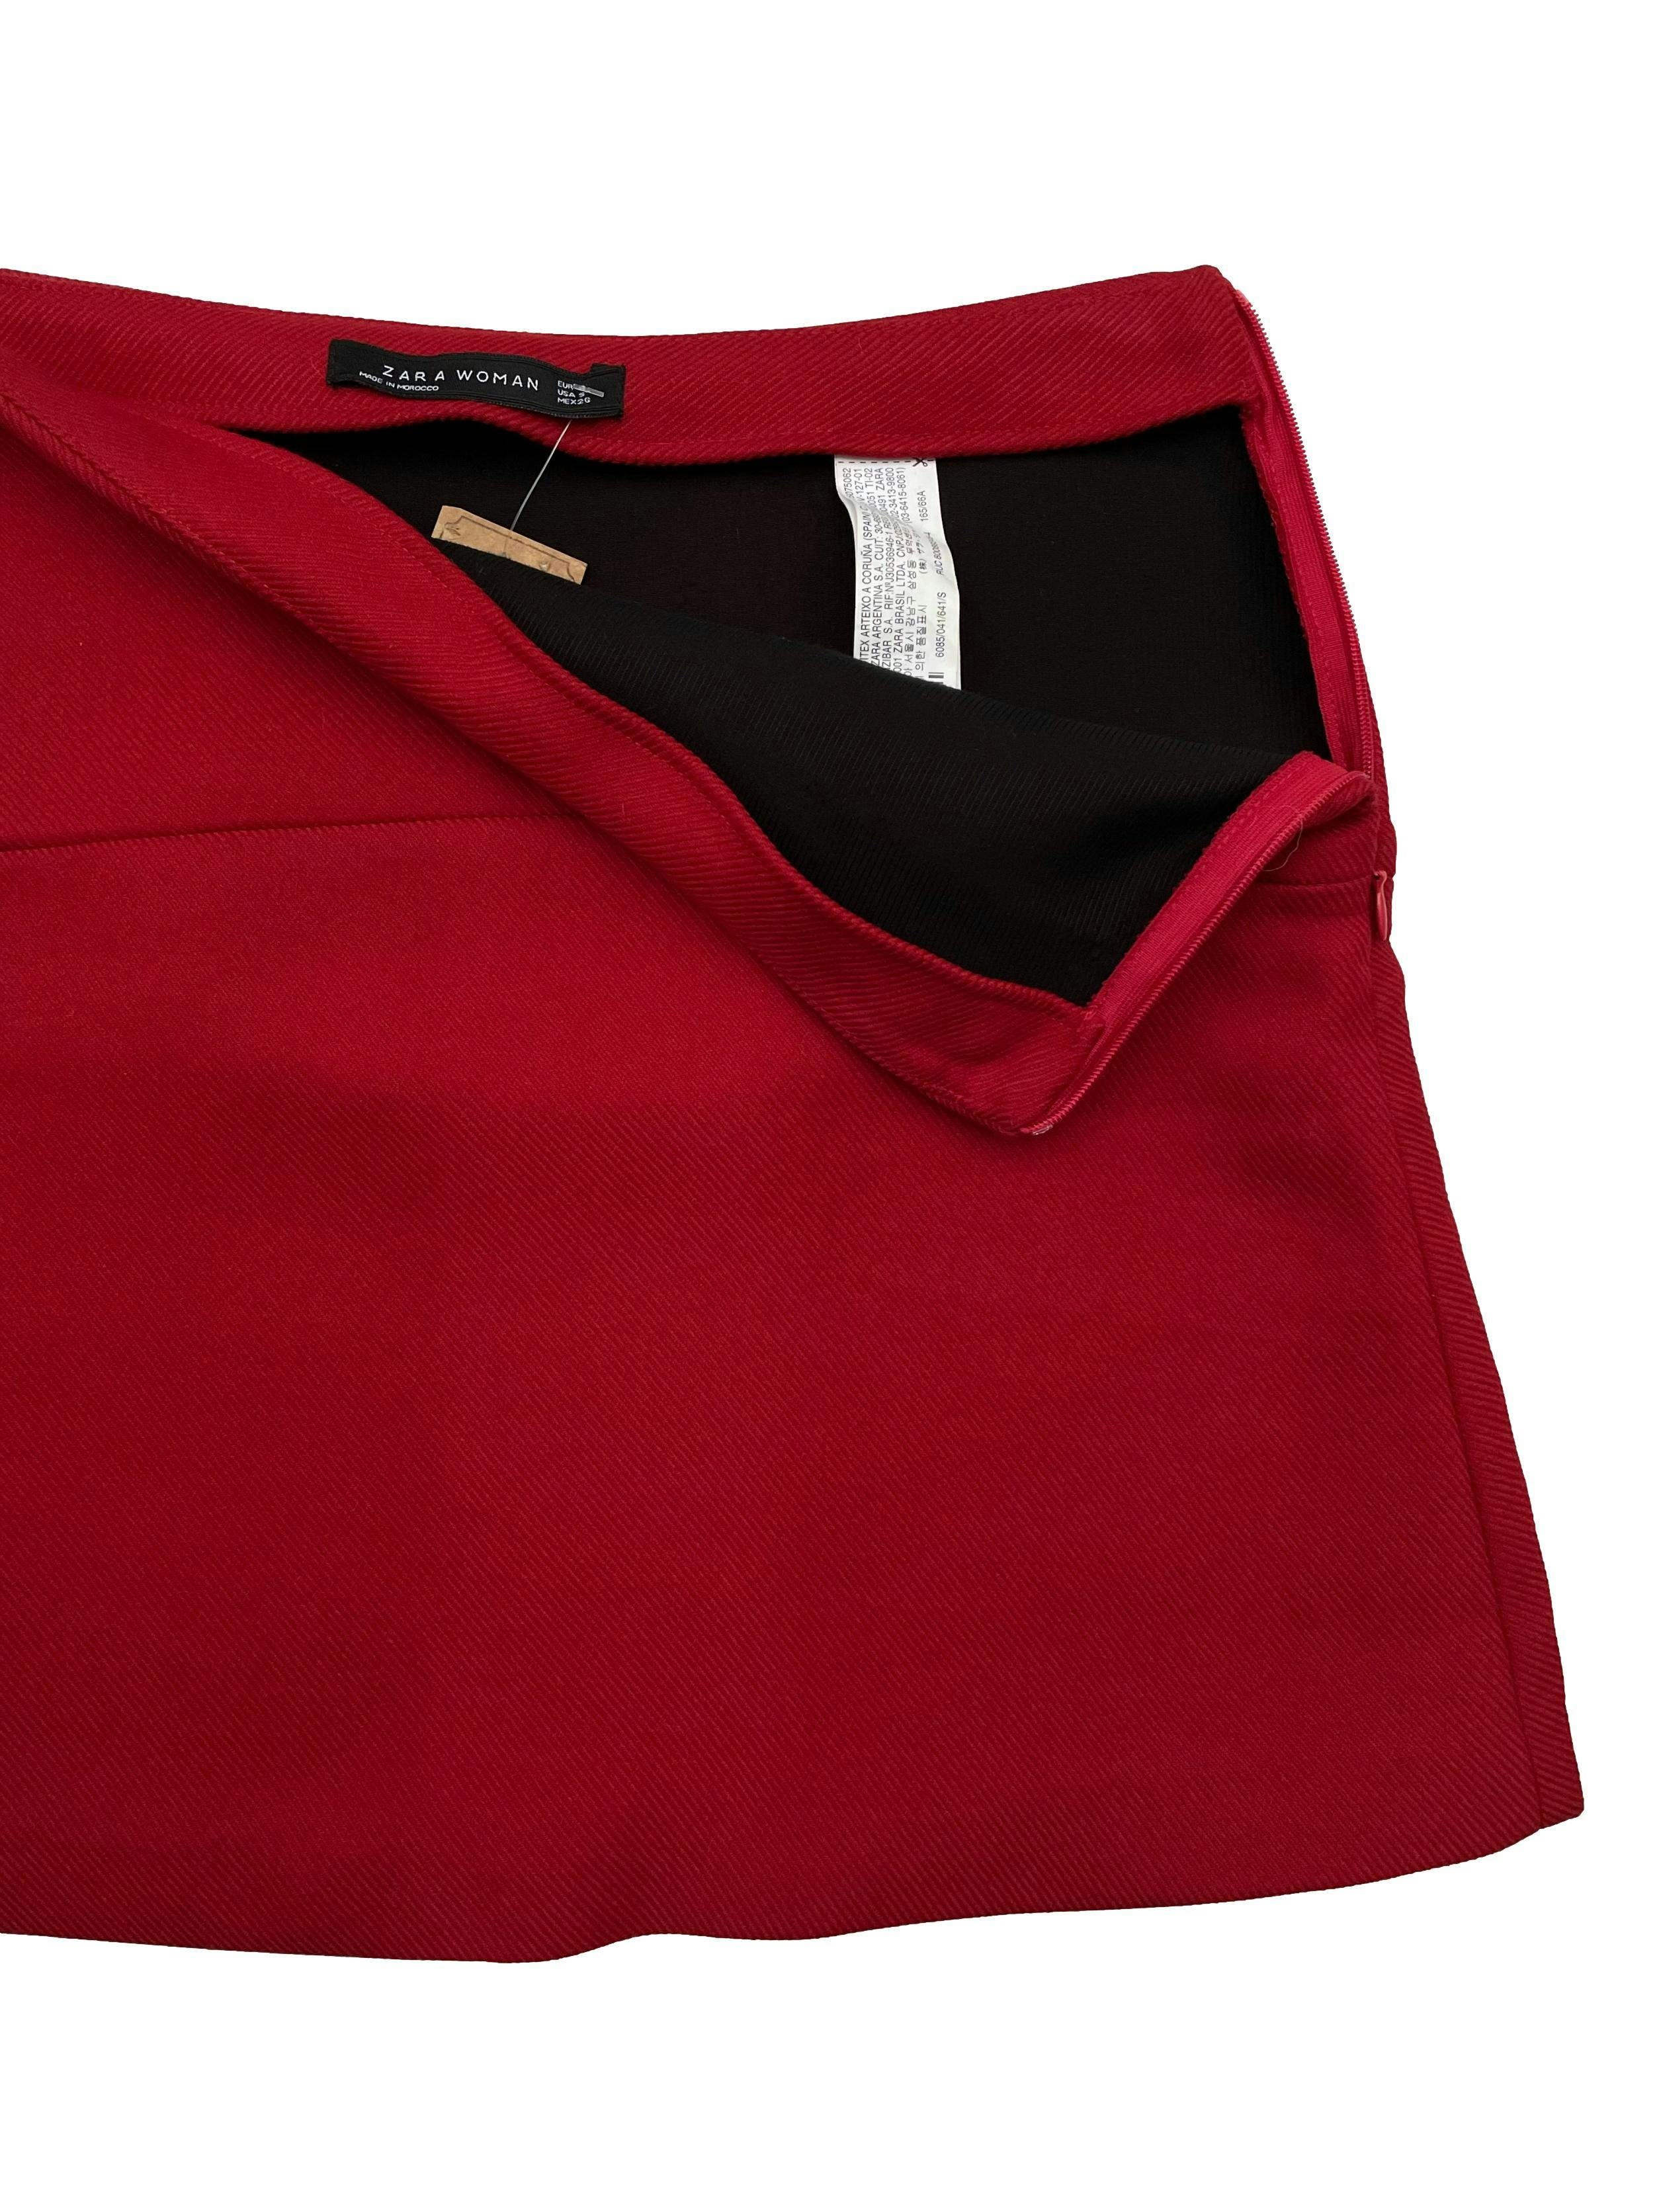 Falda Zara roja con textura en líneas, cierre lateral. Cintura 72cm Largo 40cm